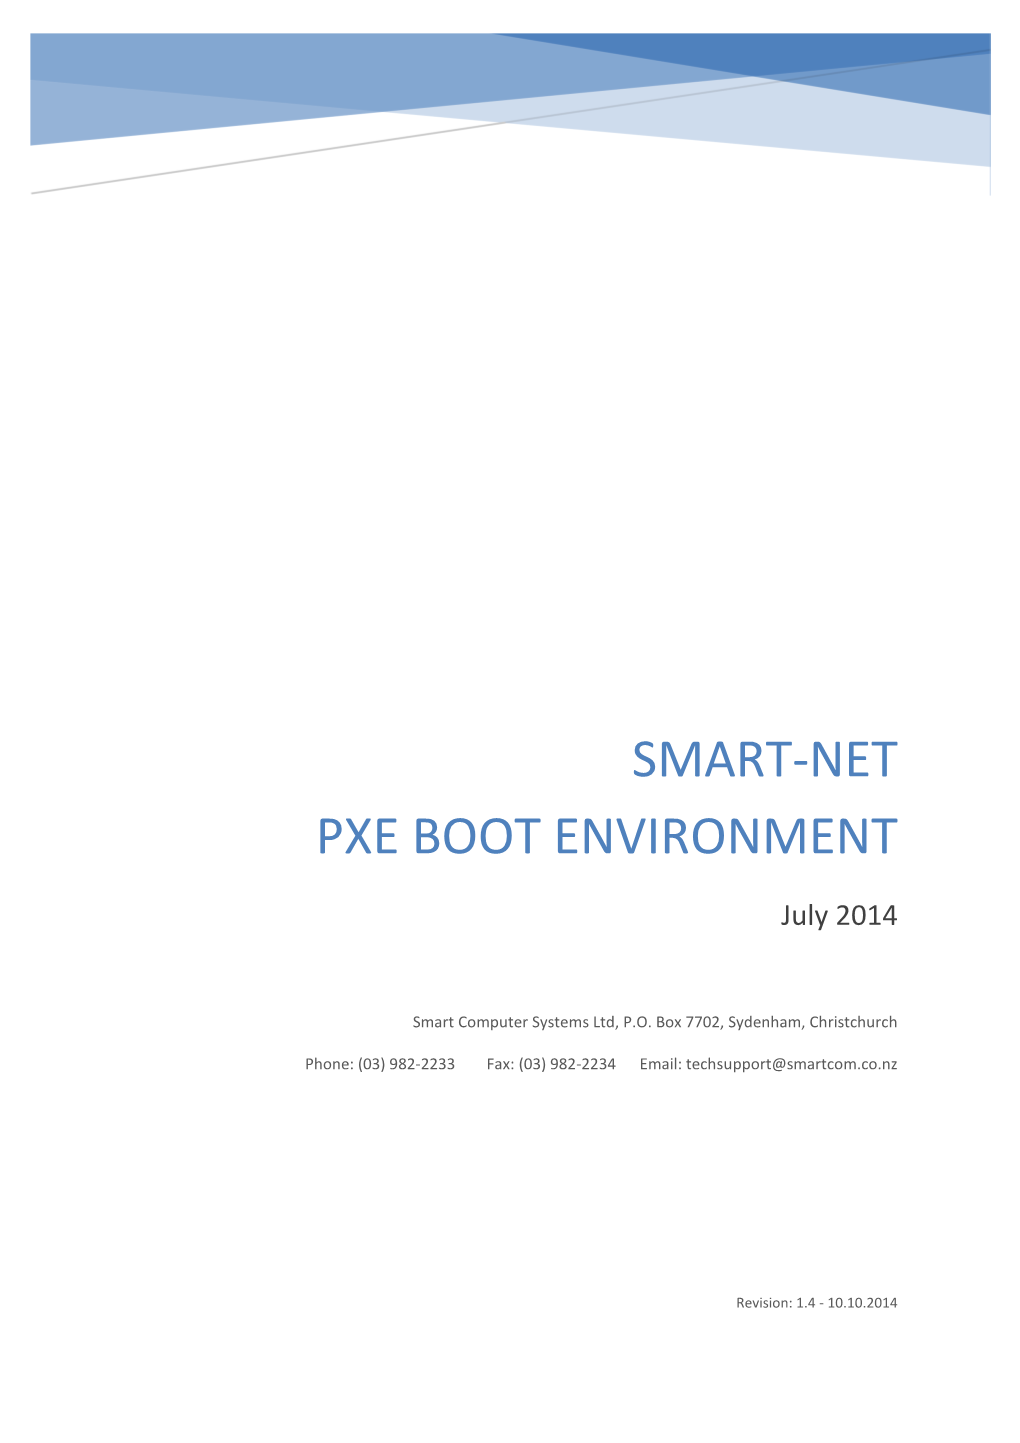 Smart-Net Pxe Boot Environment